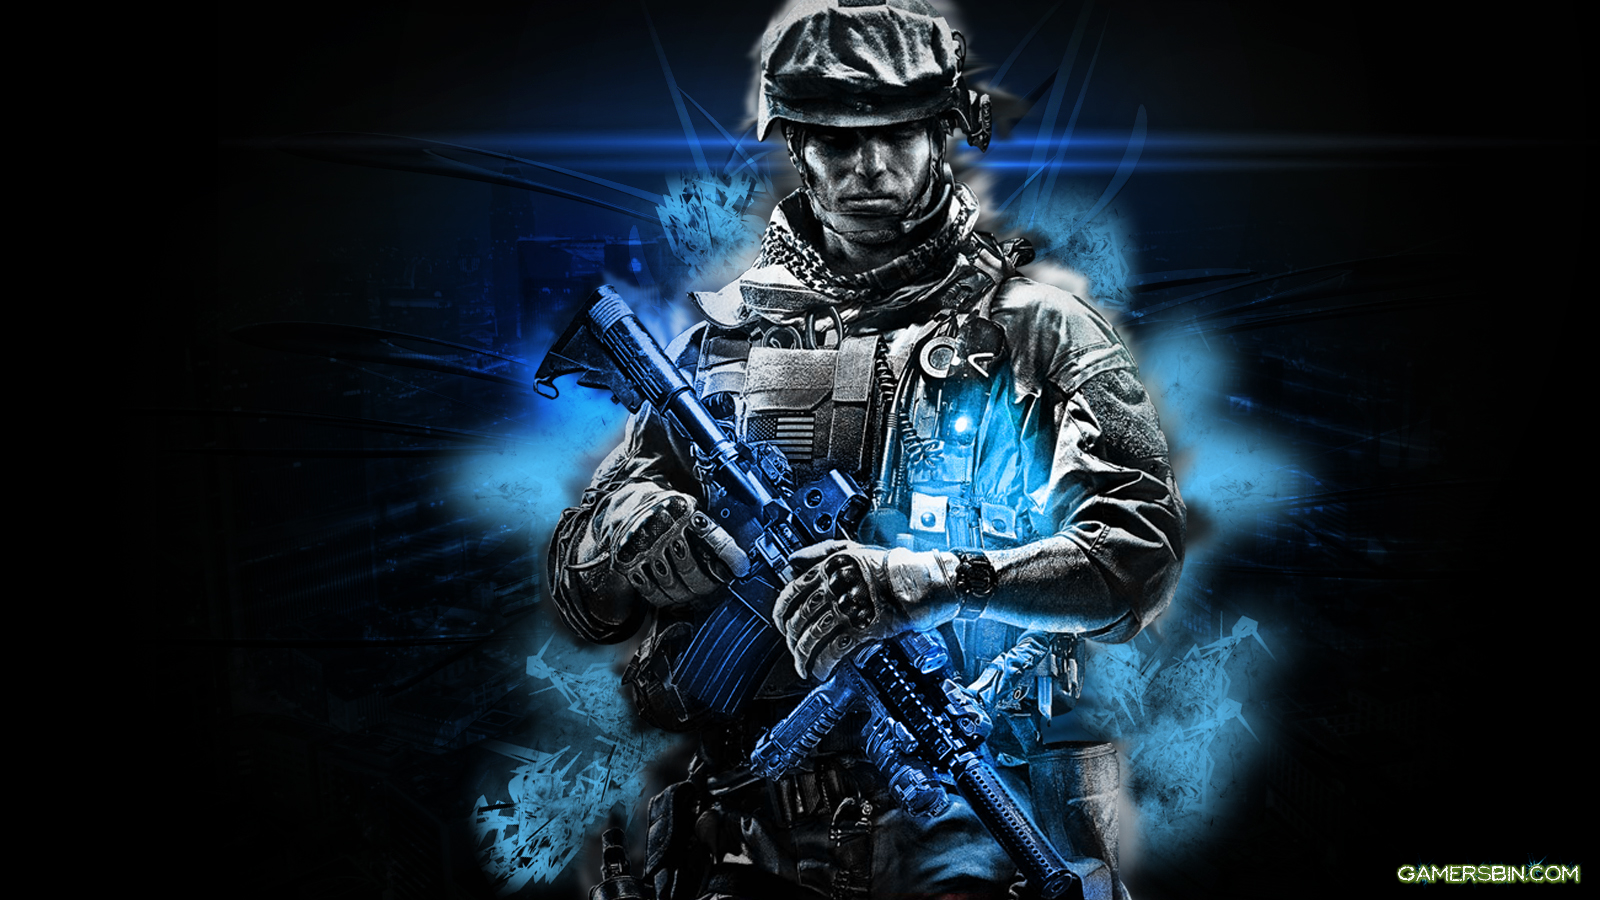 Battlefield 3 HD Wallpaper